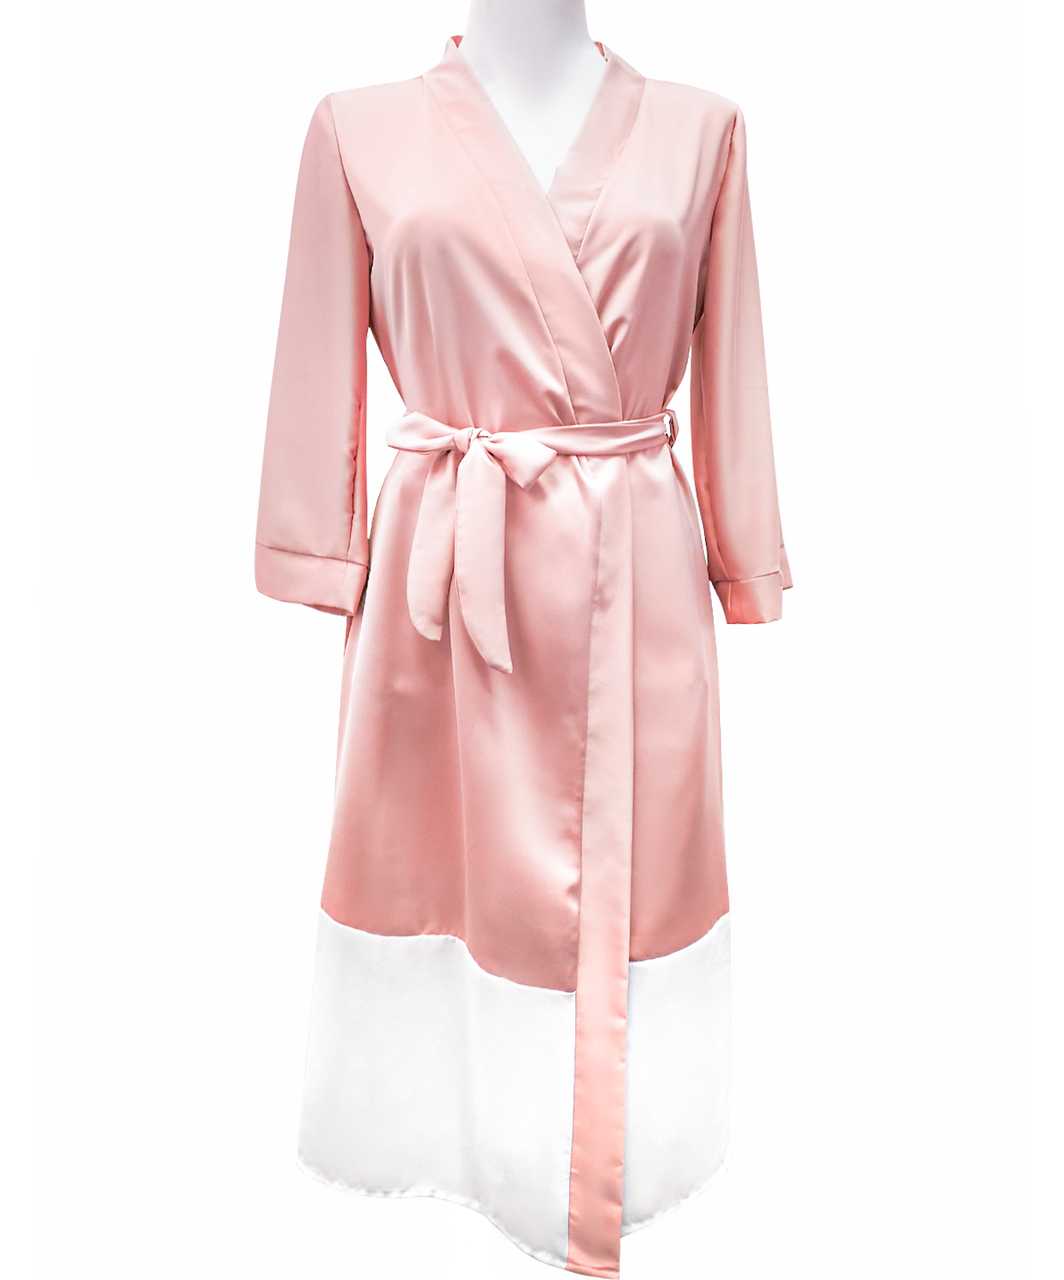 SexyStyle золотисто-розовый халат с белым подолом